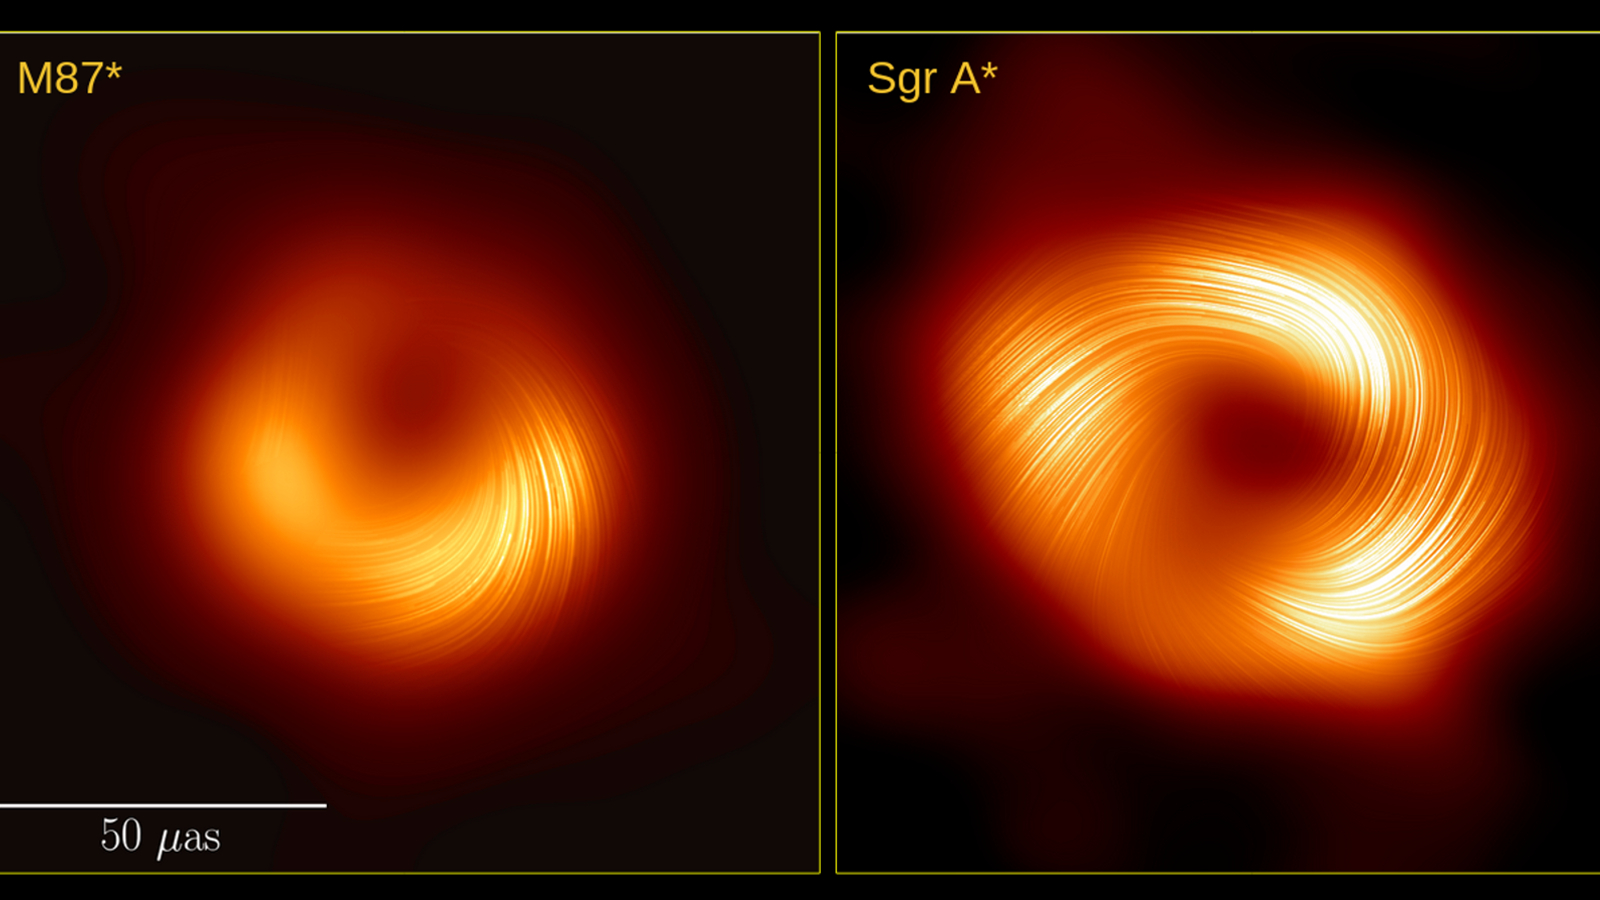 Сравнение магнитных полей черных дыр Стрельца A* и M87